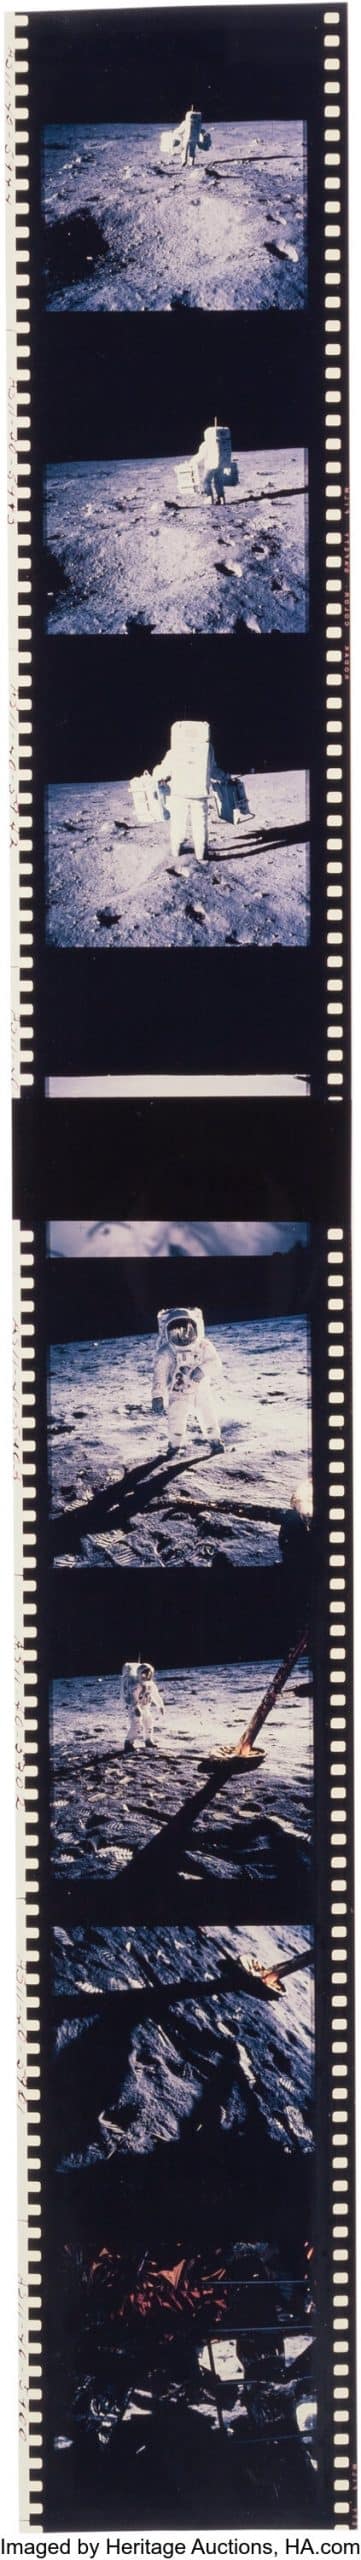 Loạt ảnh quý giá từ sự kiện sứ mệnh Apollo của NASA đang được đấu giá